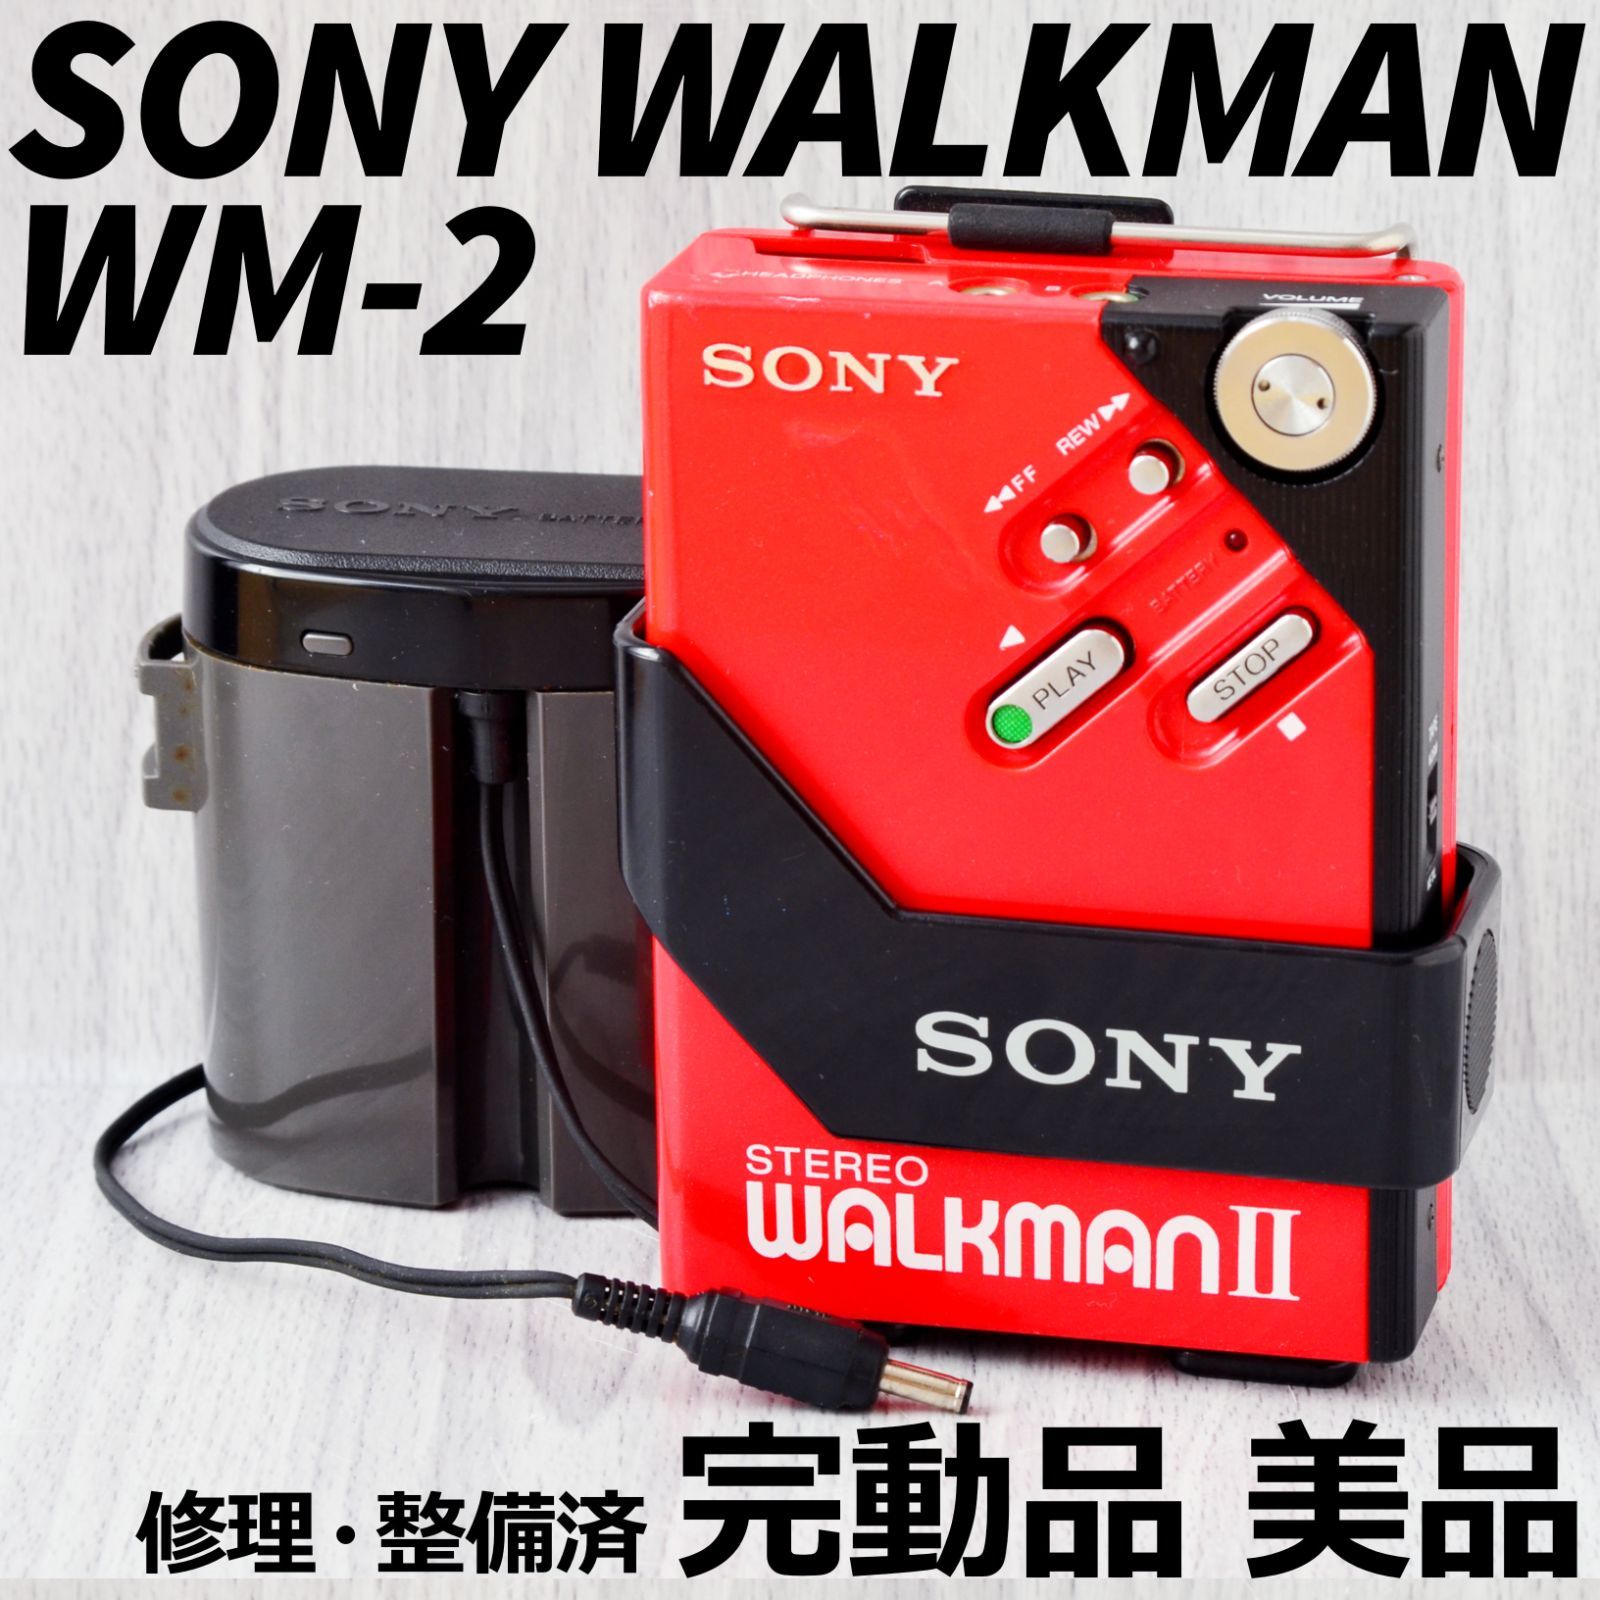 SONY WALKMAN2 ソニー ウォークマン カセットプレーヤー カセット 